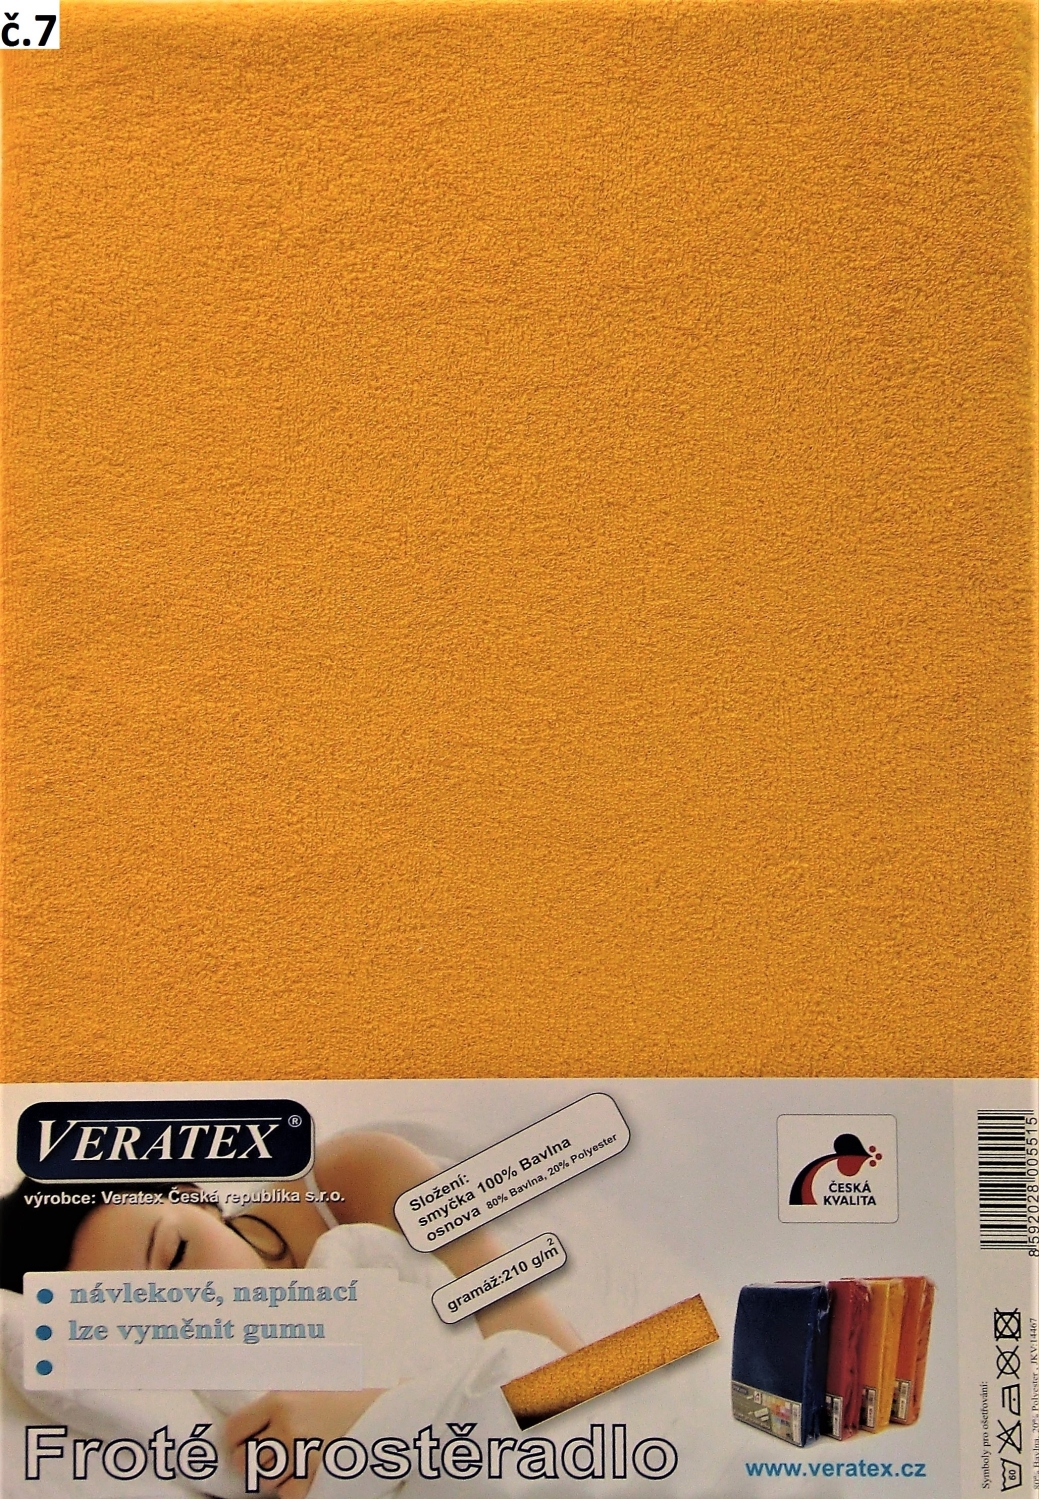 Veratex Froté prostěradlo 160x220/16 cm (č. 7-sytě žlutá)